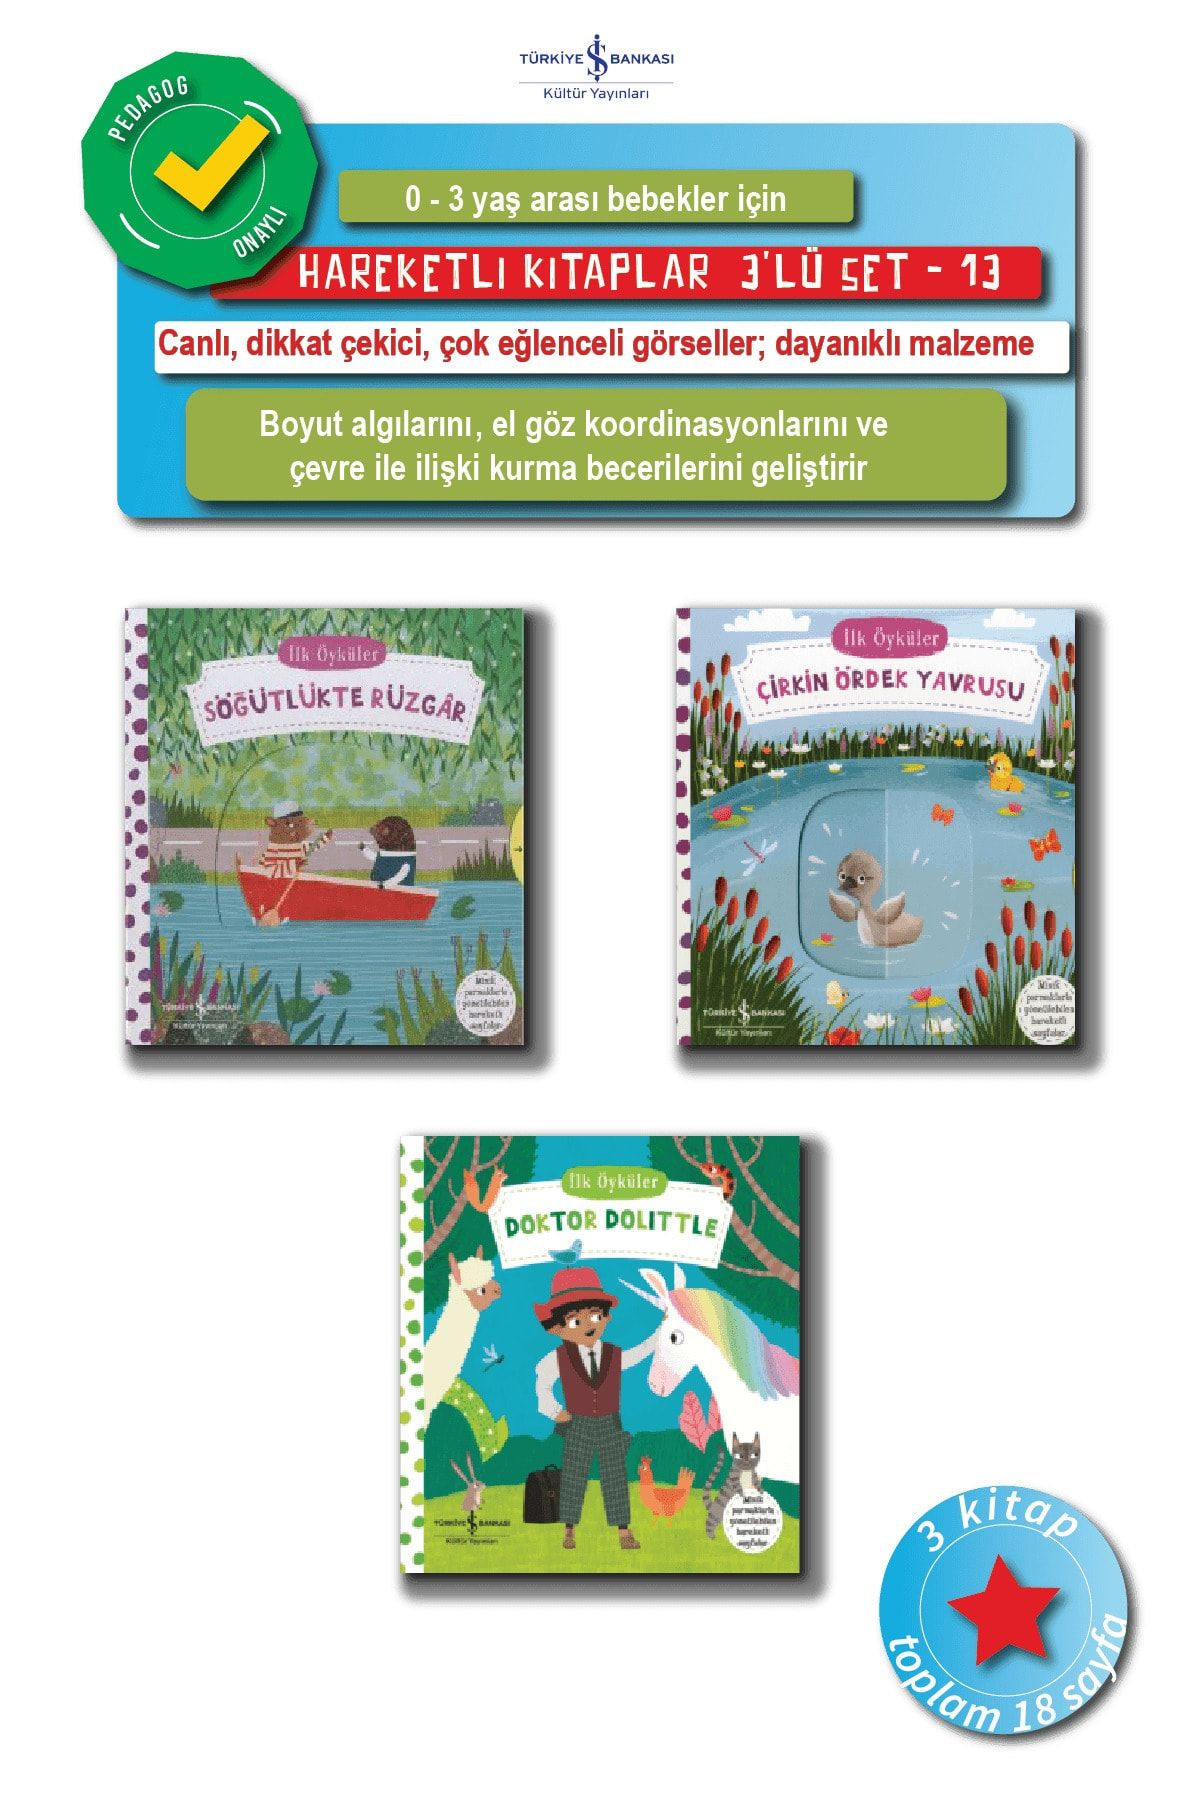 Türkiye İş Bankası Kültür Yayınları 0 - 3 Yaş Arası Bebekler Için, Ilgi Çekici, Eğlenceli, Dayanıklı Hareketli Kitaplar Seti